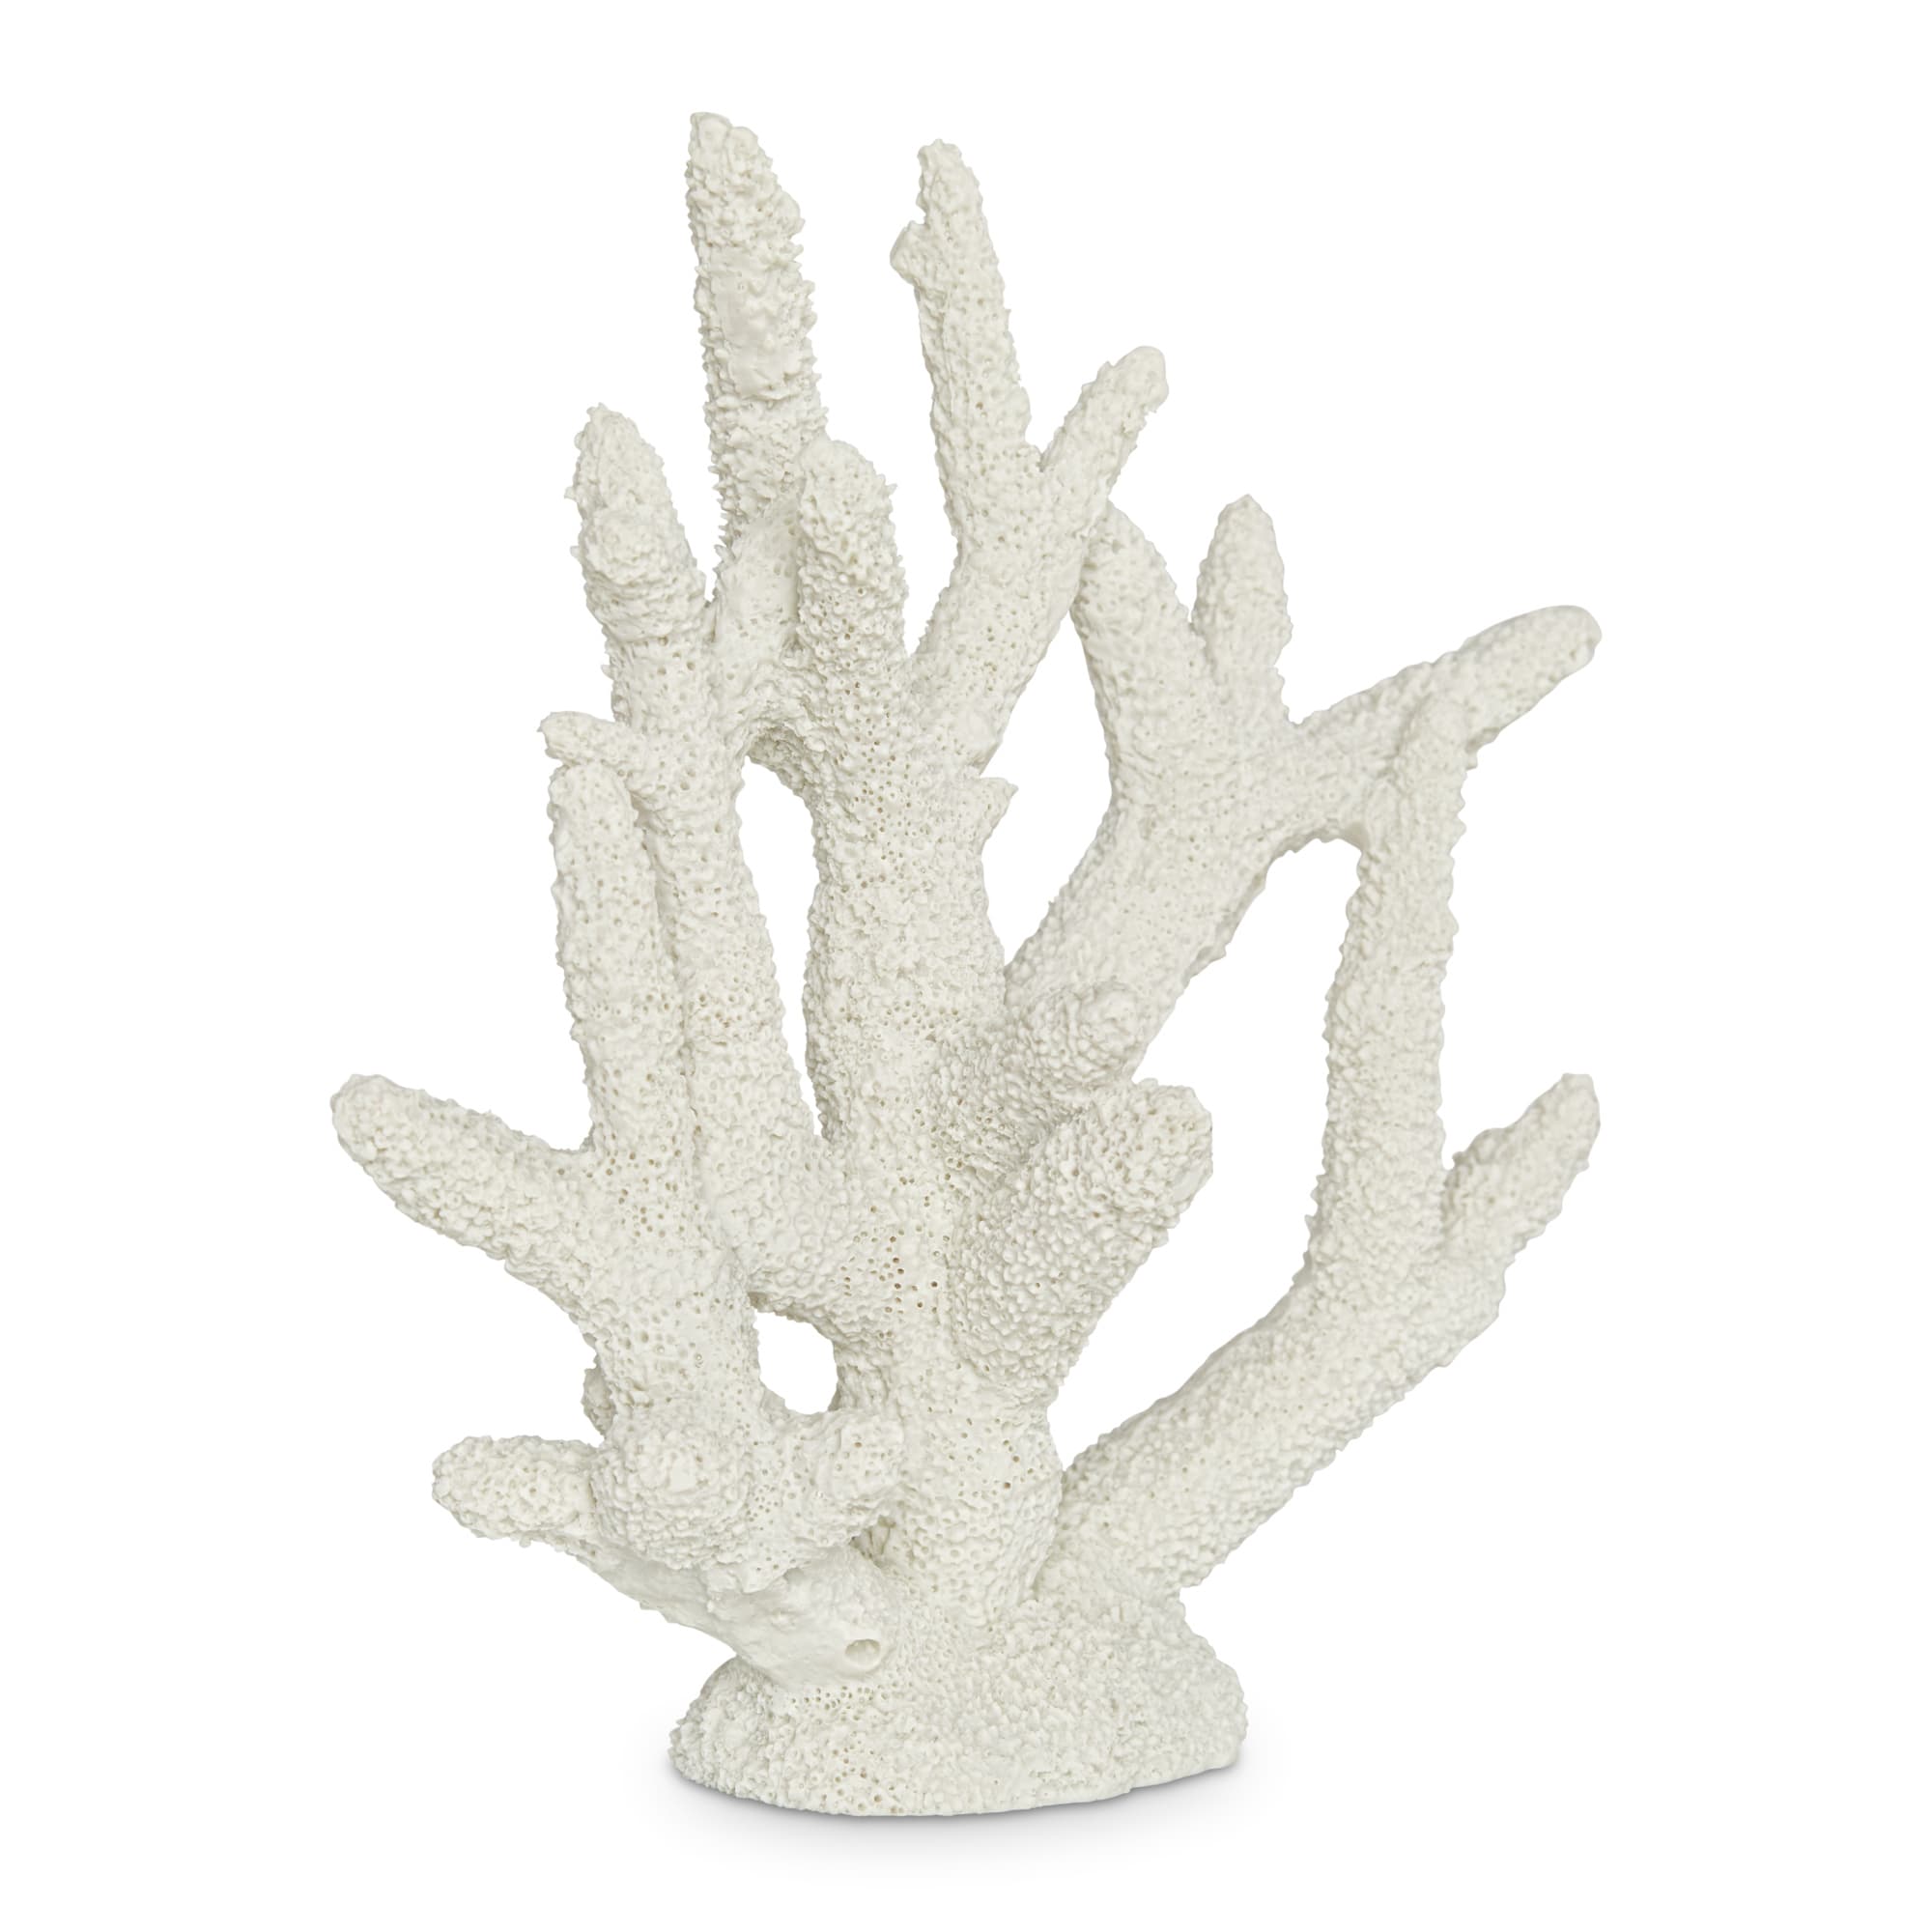 Imagitarium White Staghorn Coral Decor, Large